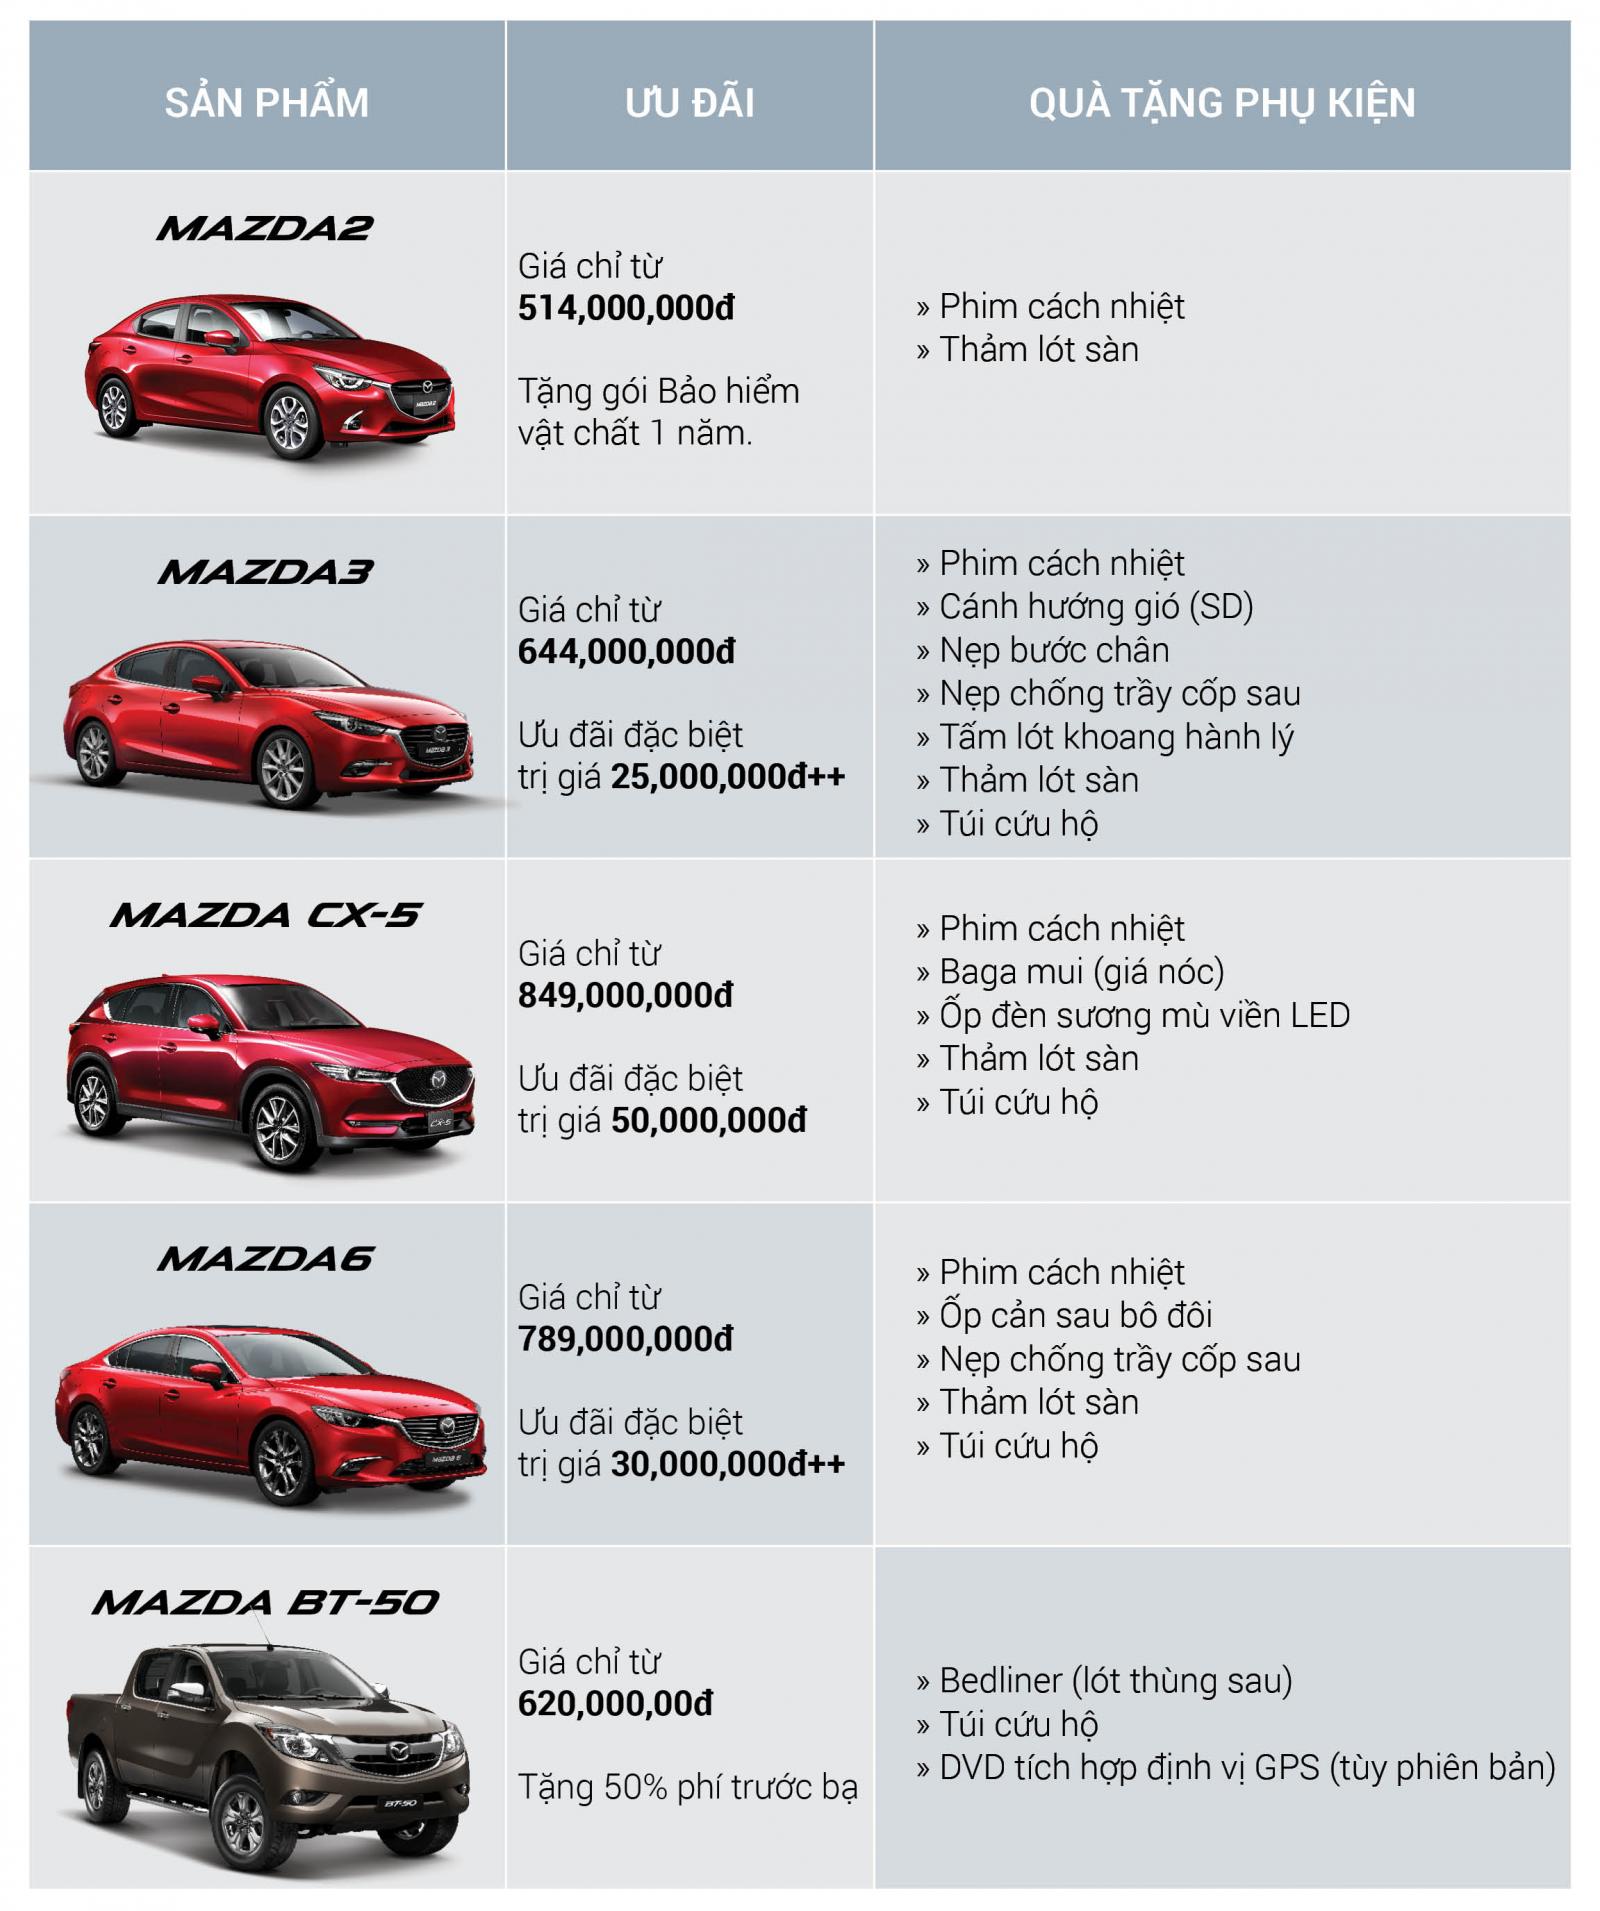 Giá xe Mazda CX-5 2018 tại đại lý "bốc hơi" 78 triệu đồng a2